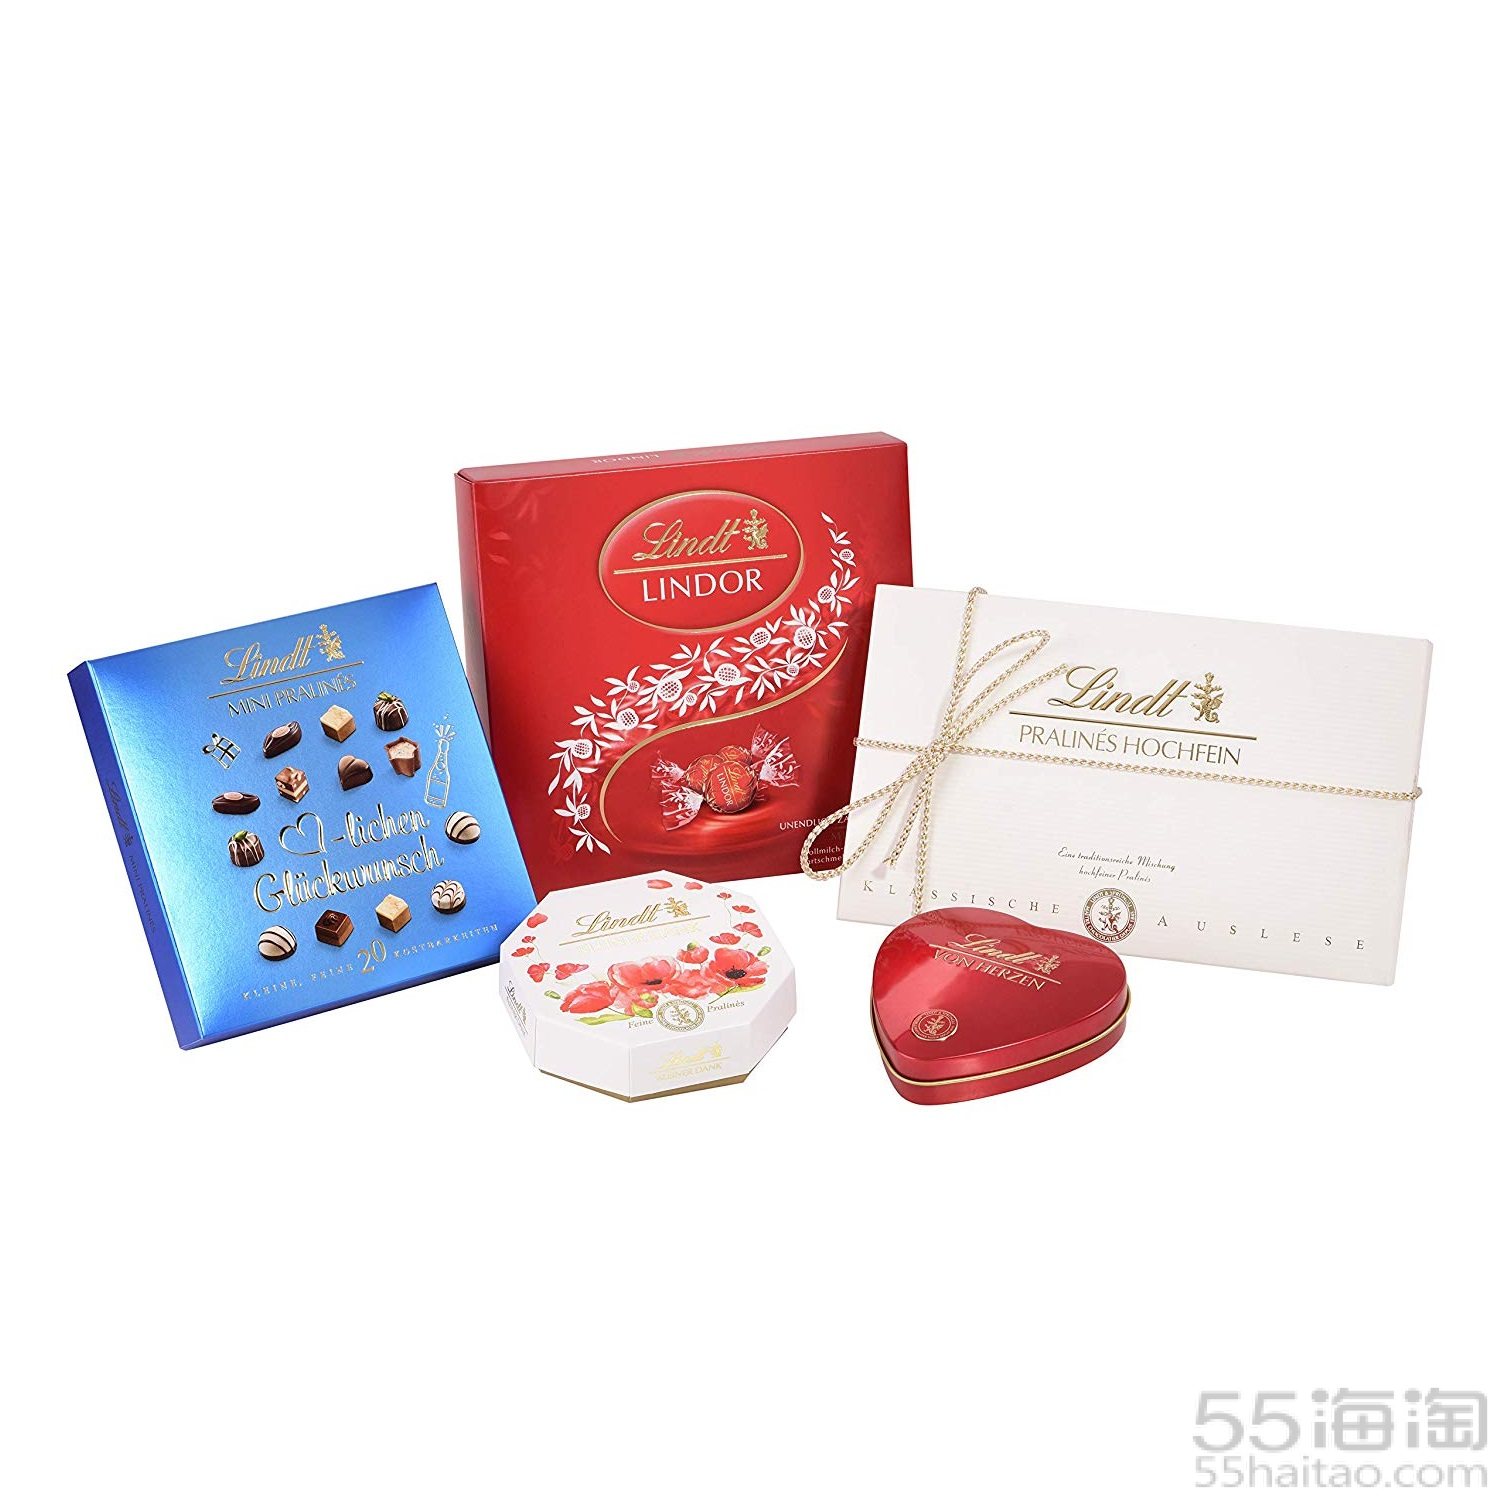 【中亚Prime会员】Lindt 瑞士莲 巧克力礼盒套装 477g